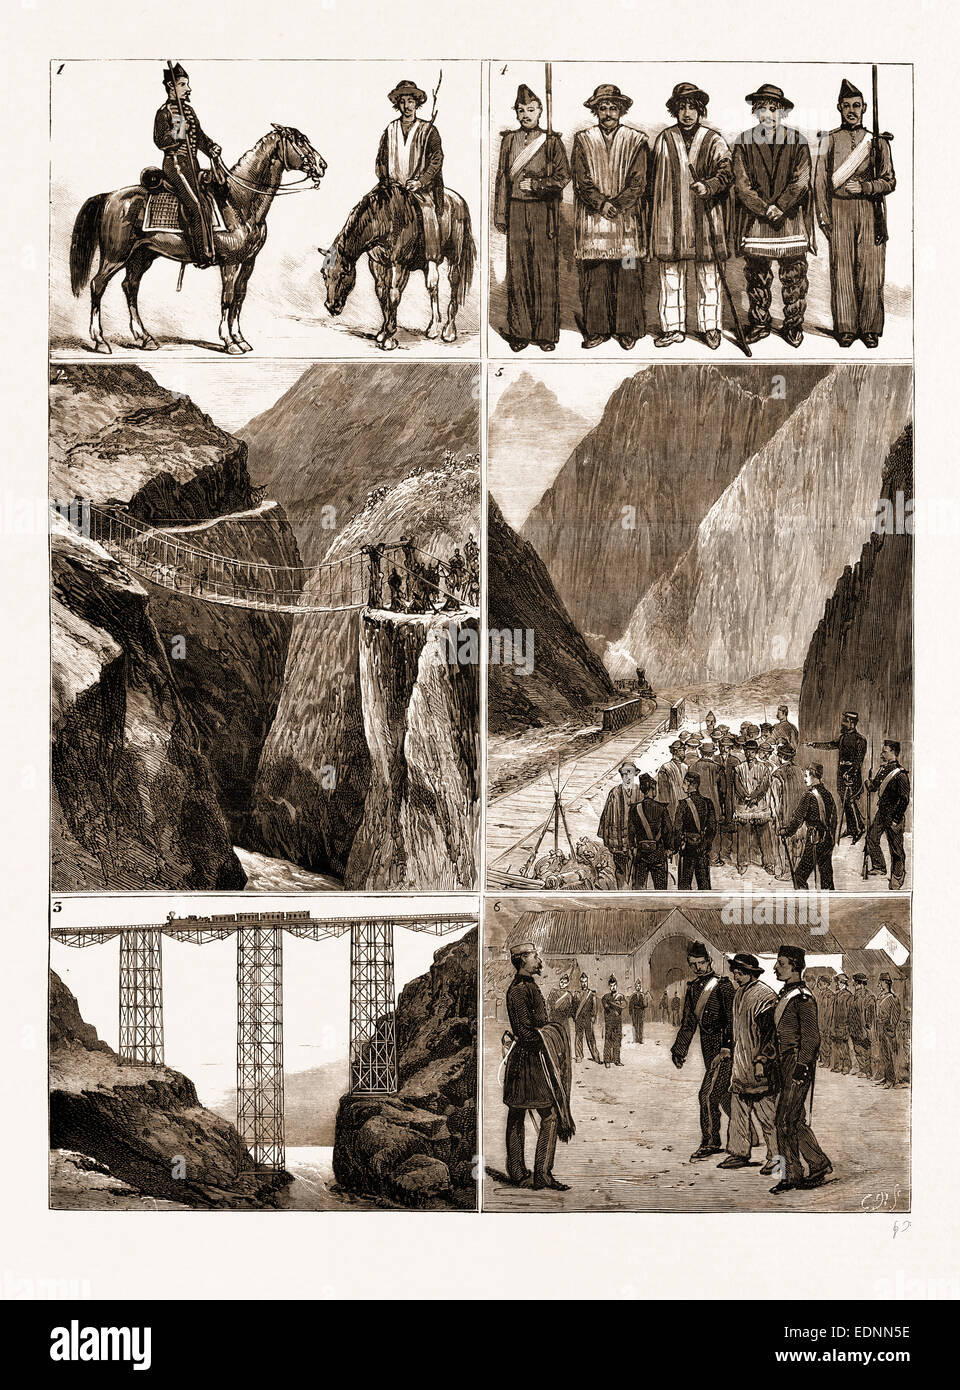 La guerra en América del Sur, el reclutamiento para el ejército peruano en la cordillera, 1881: 1. La materia prima y del producto acabado Foto de stock